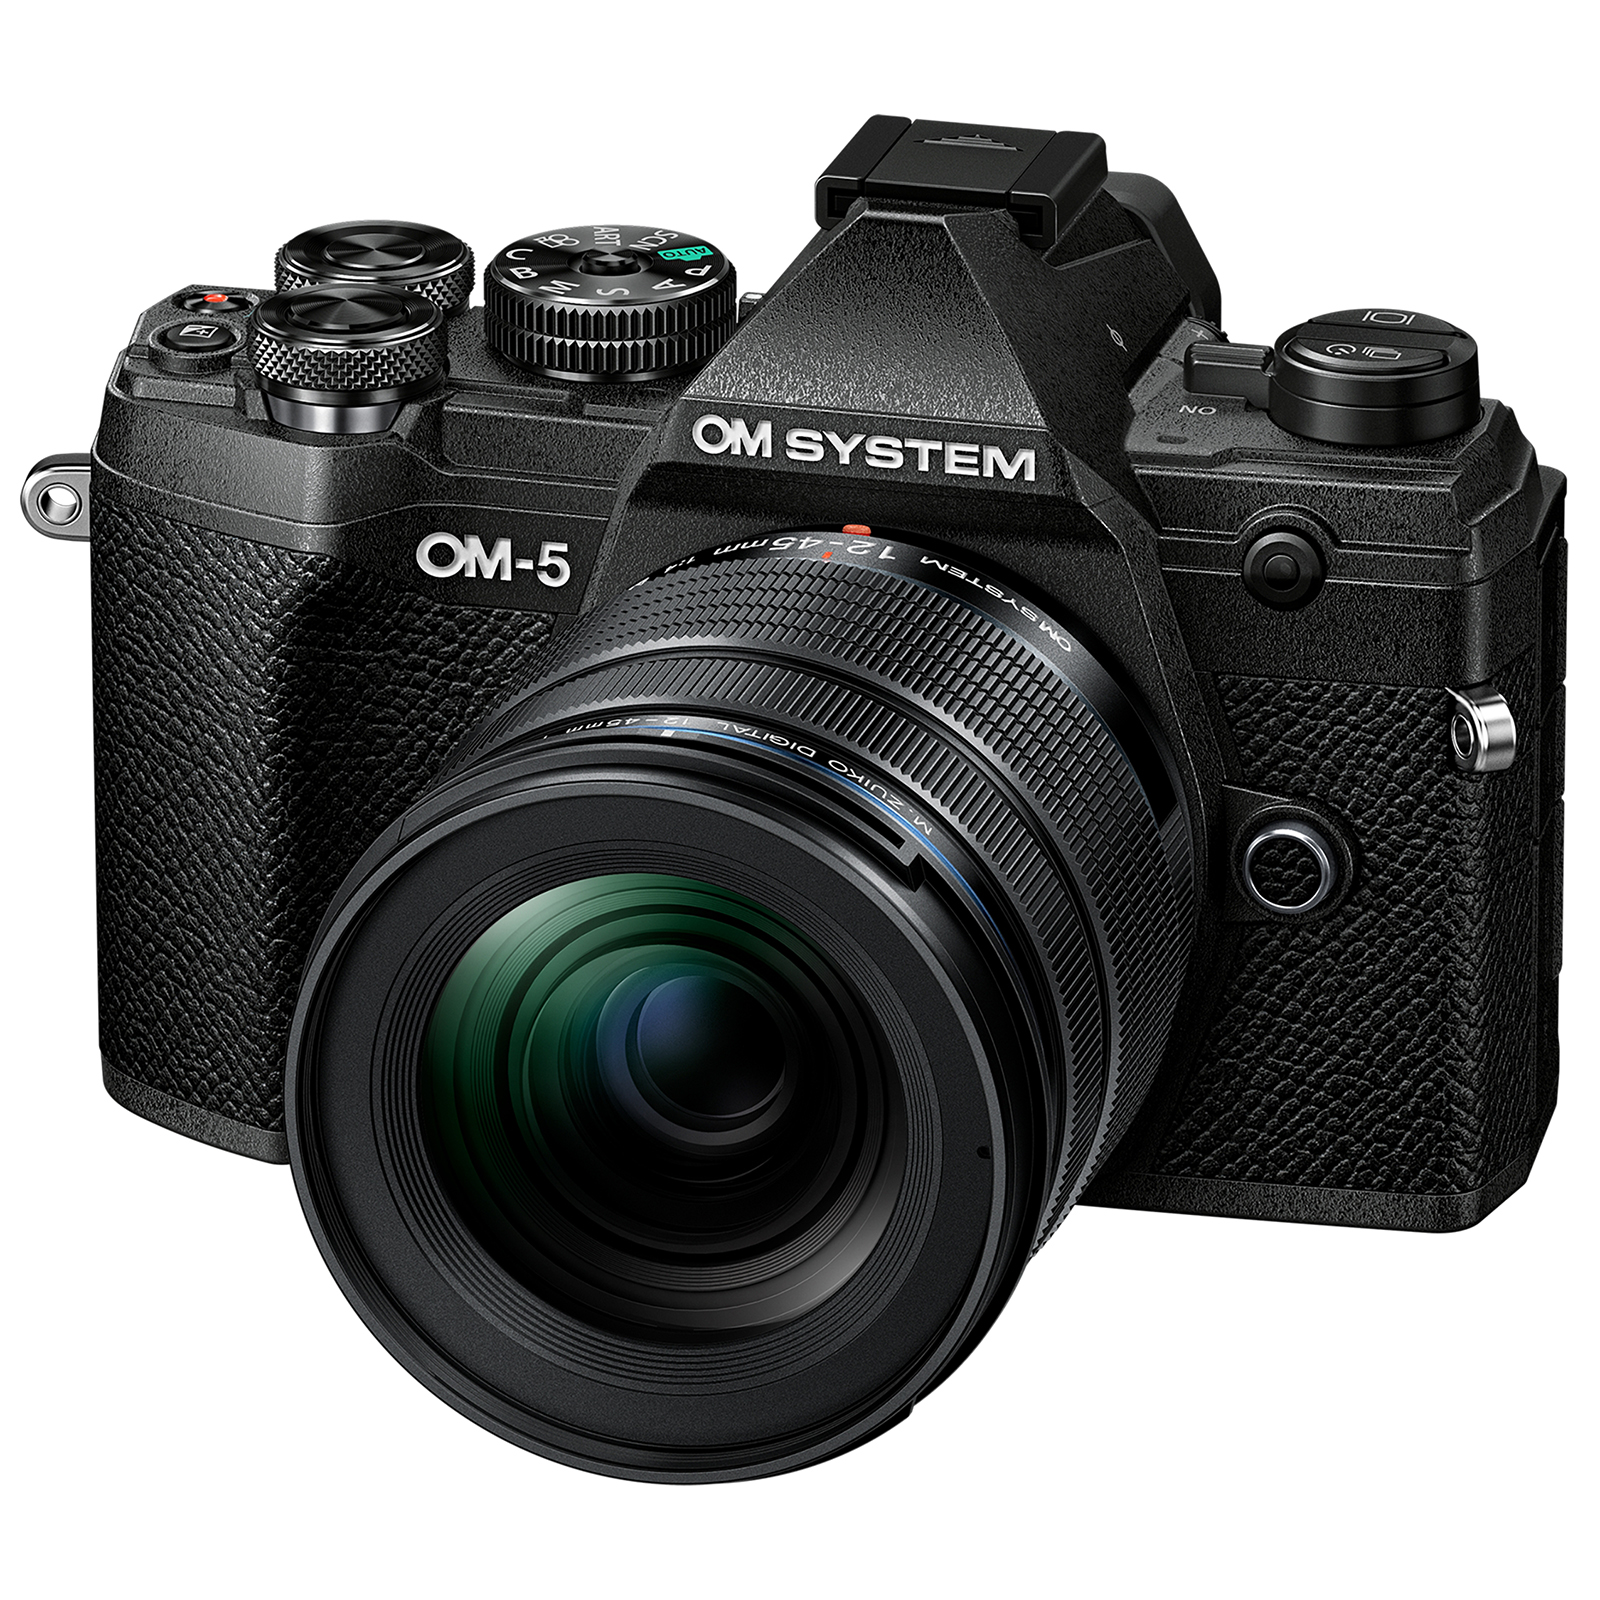 Image of OM SYSTEM OM5 Digital Camera with 1245mm F40 PRO Lens Black